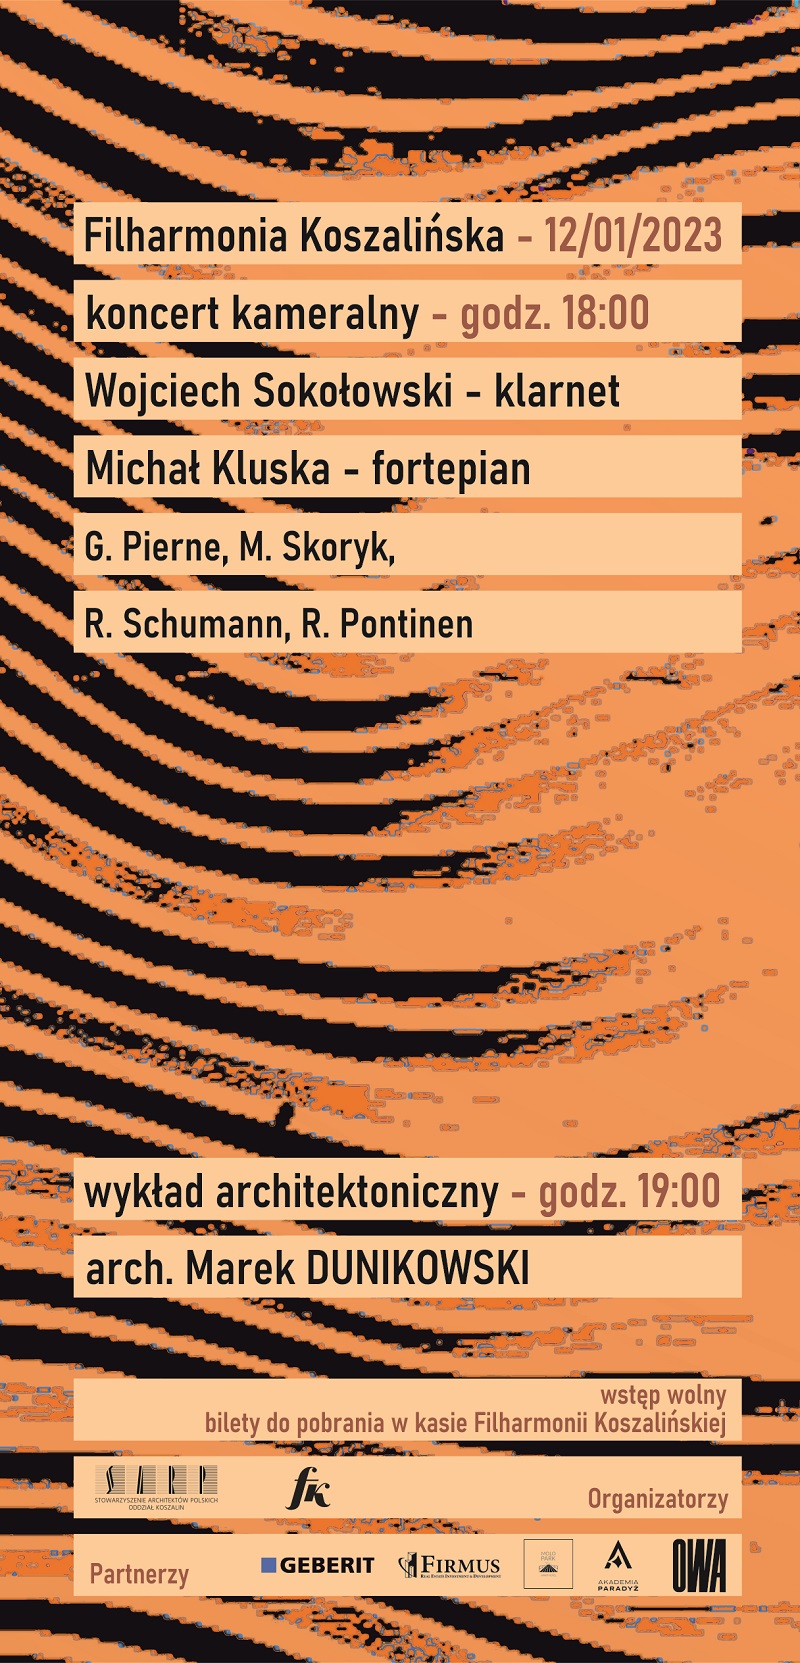 Wykład architektoniczny arch. Marka DUNIKOWSKIEGO + koncert muzyki kameralnej